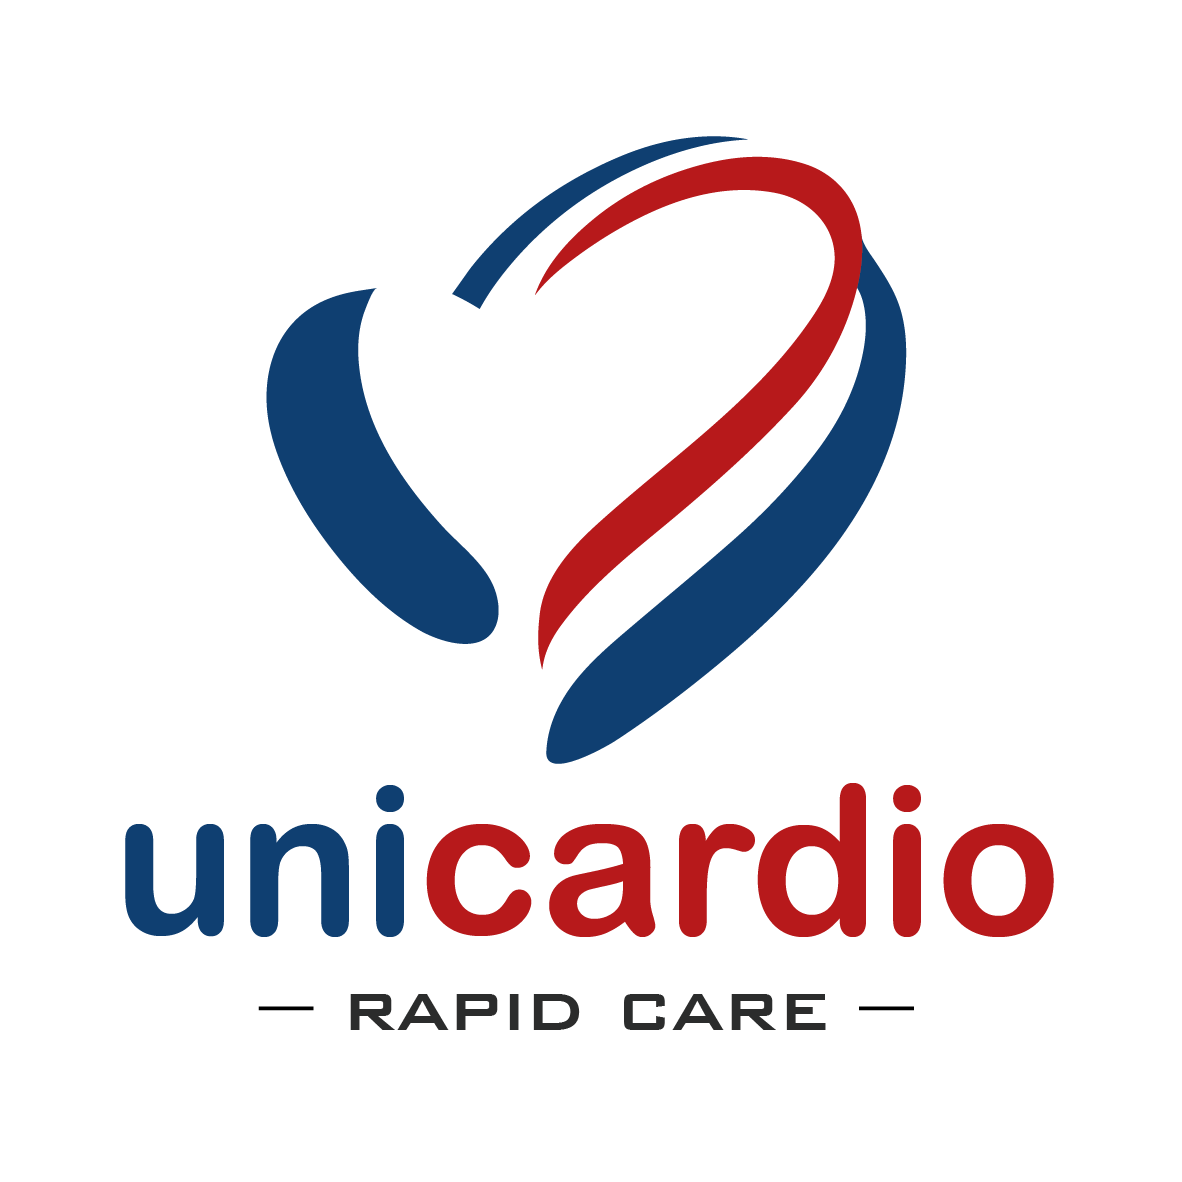 Unicardio